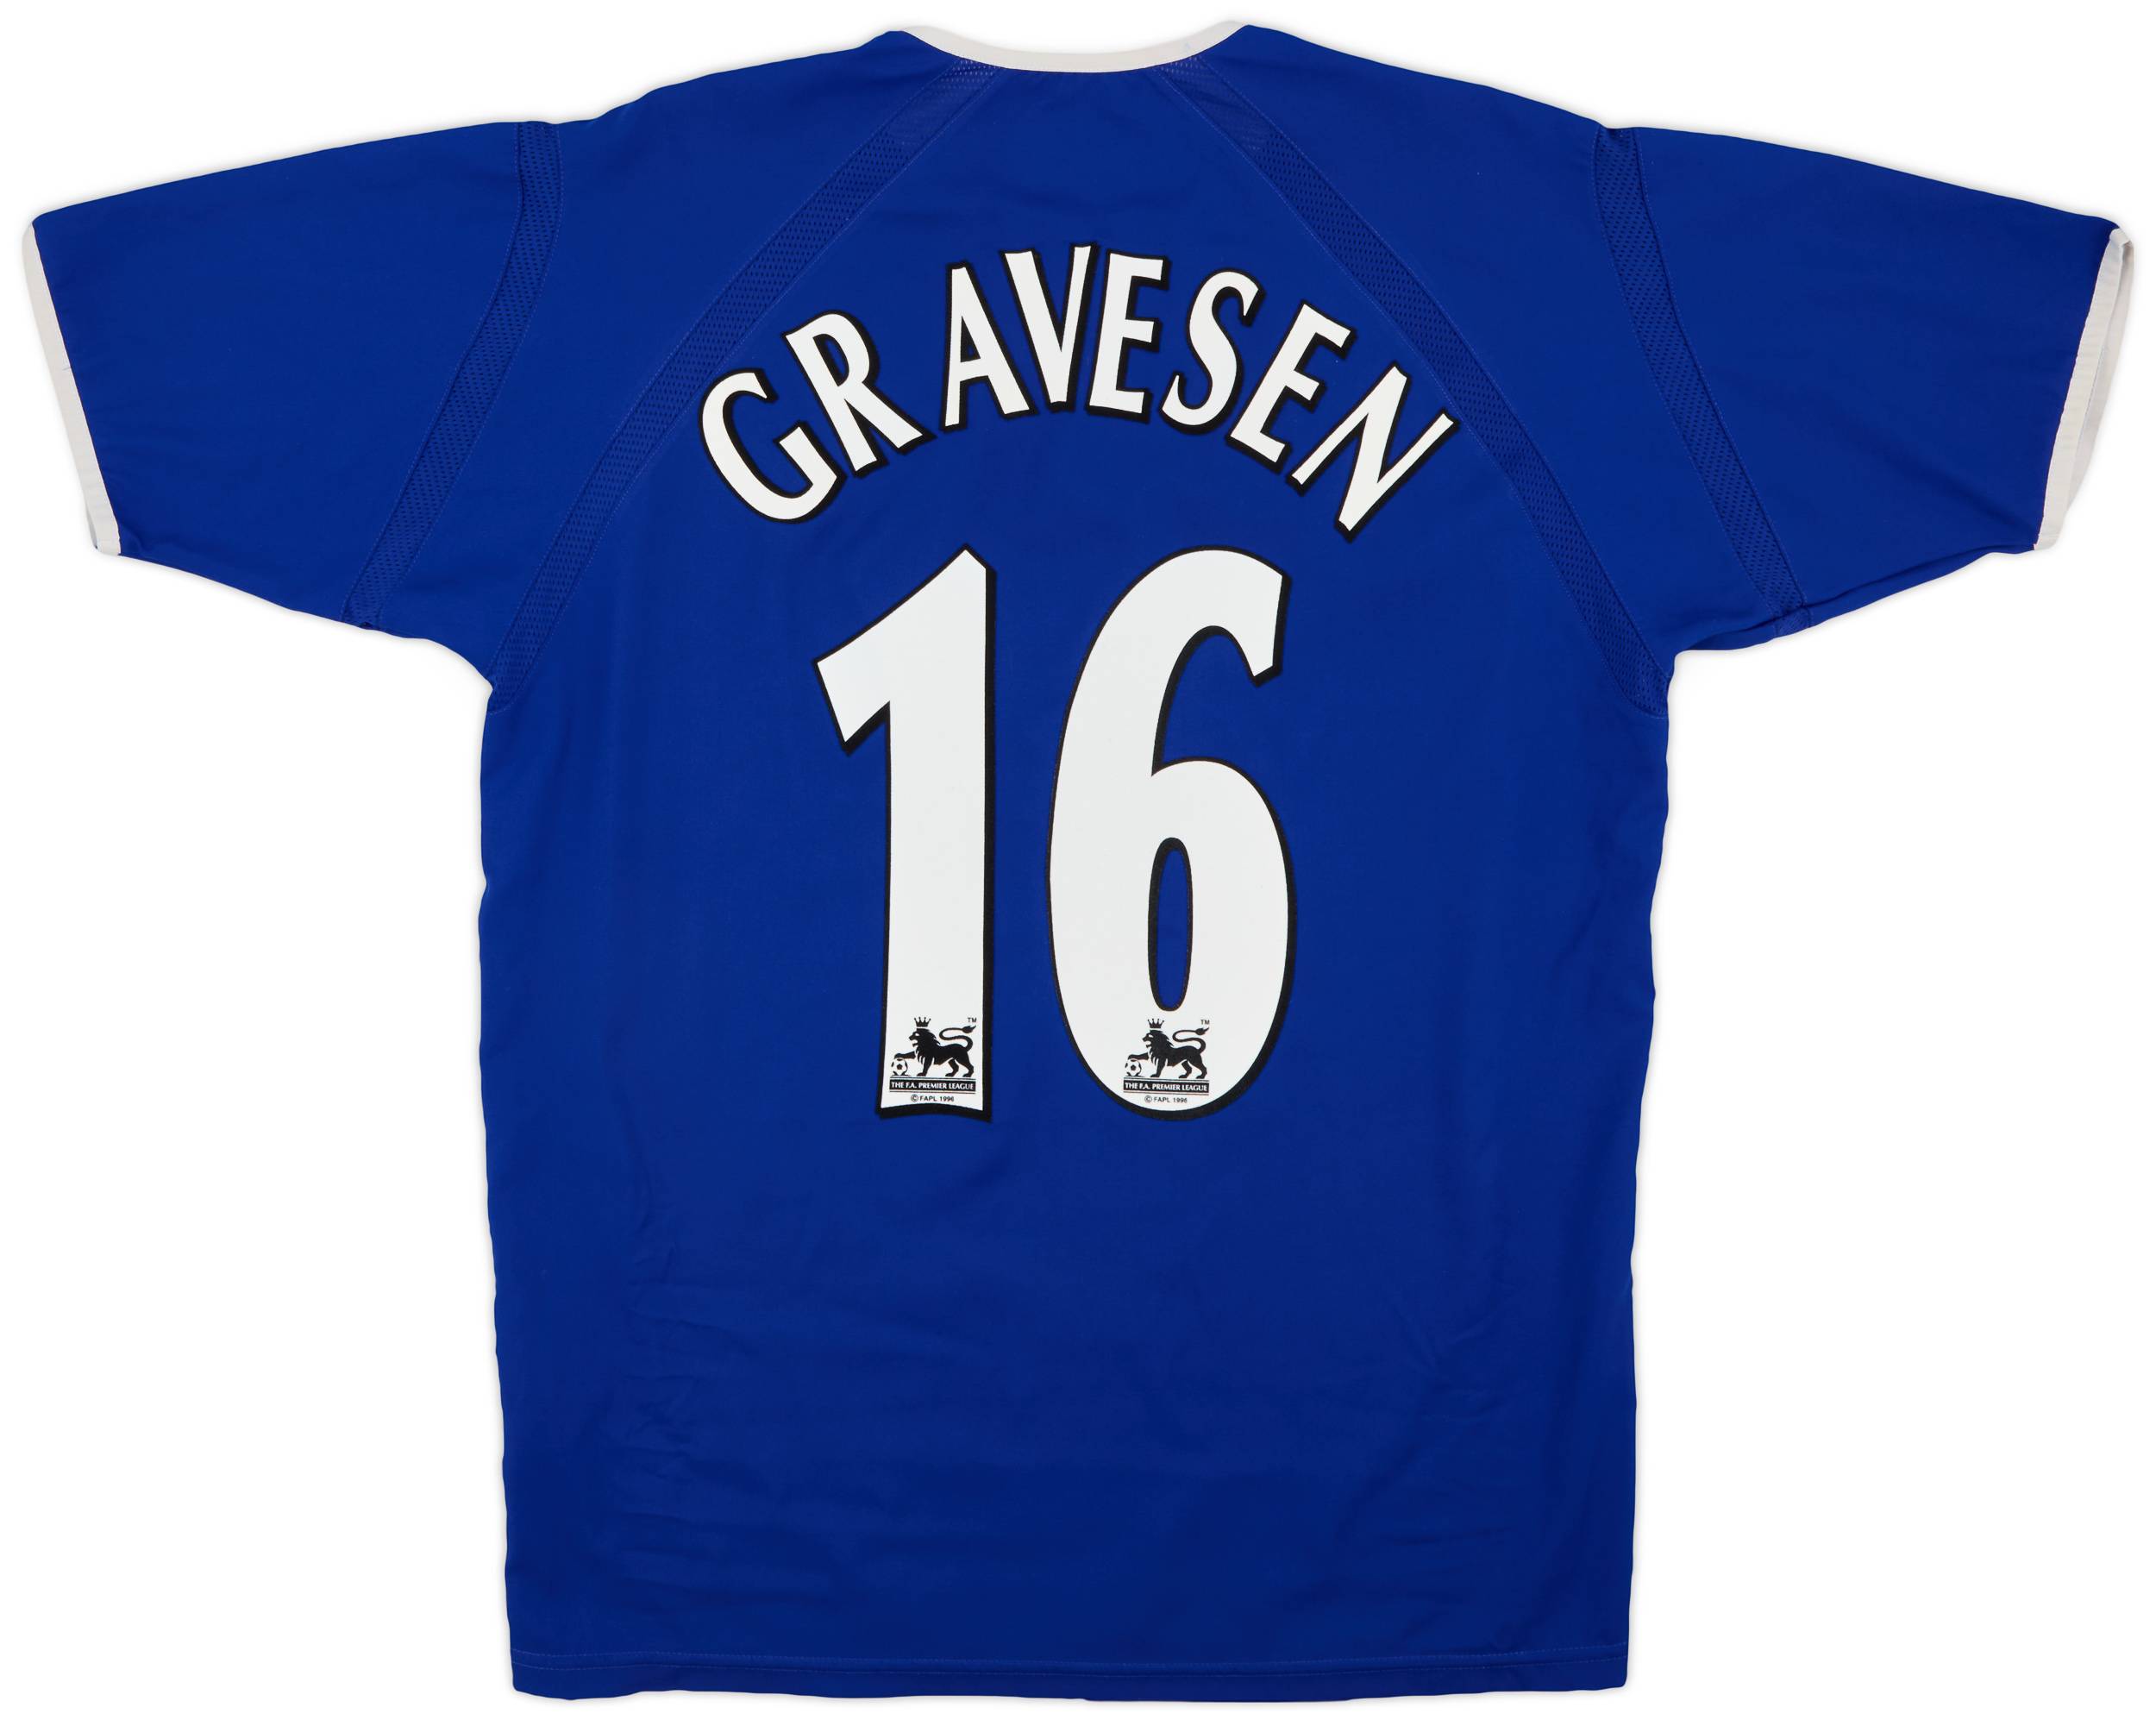 2003-04 Everton Home Shirt Gravesen #16 - 9/10 - (M)